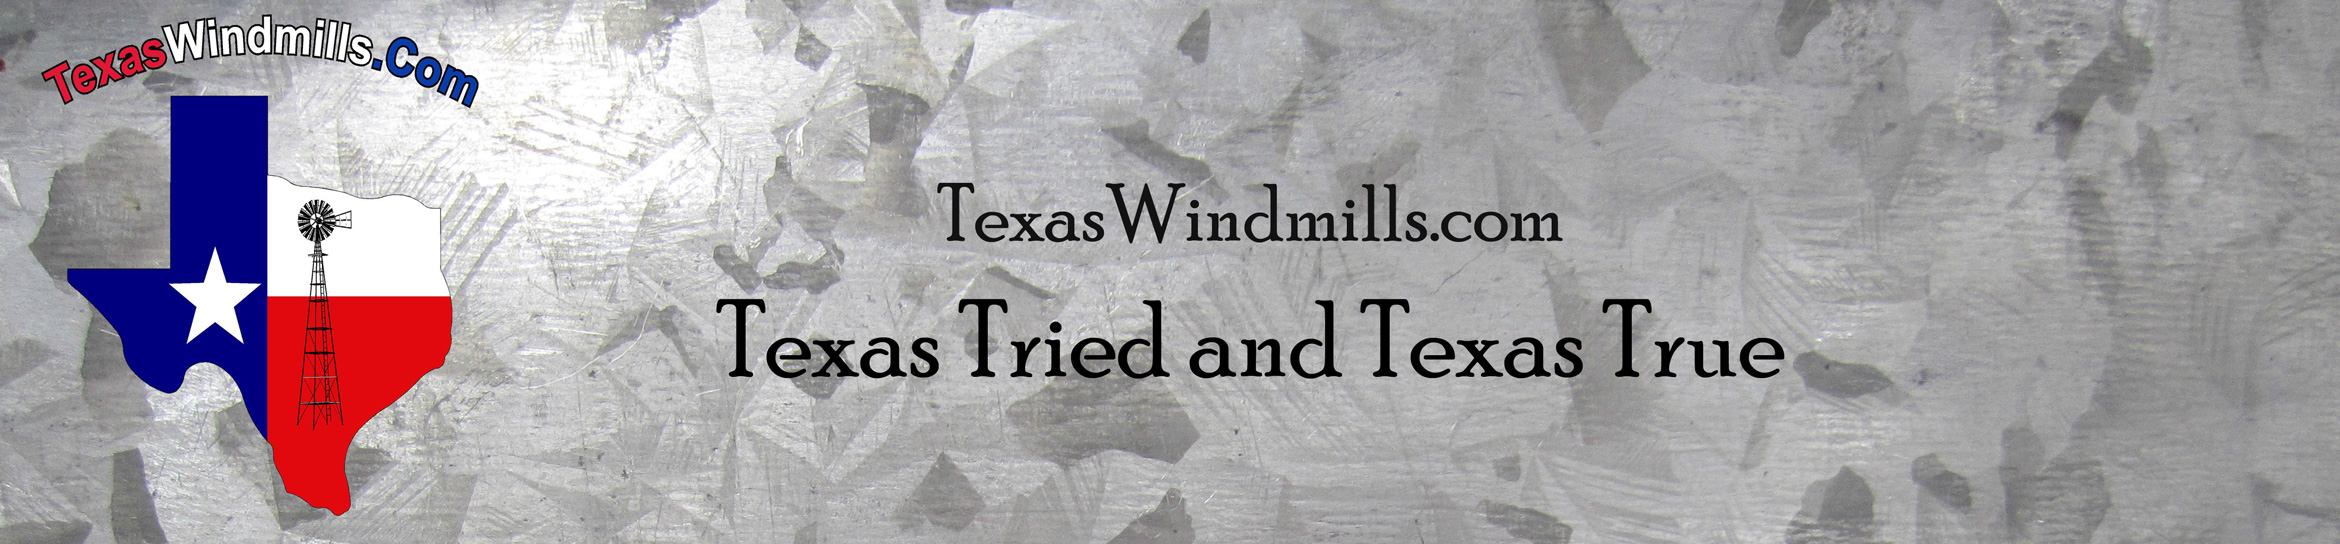 TexasWindmills.com